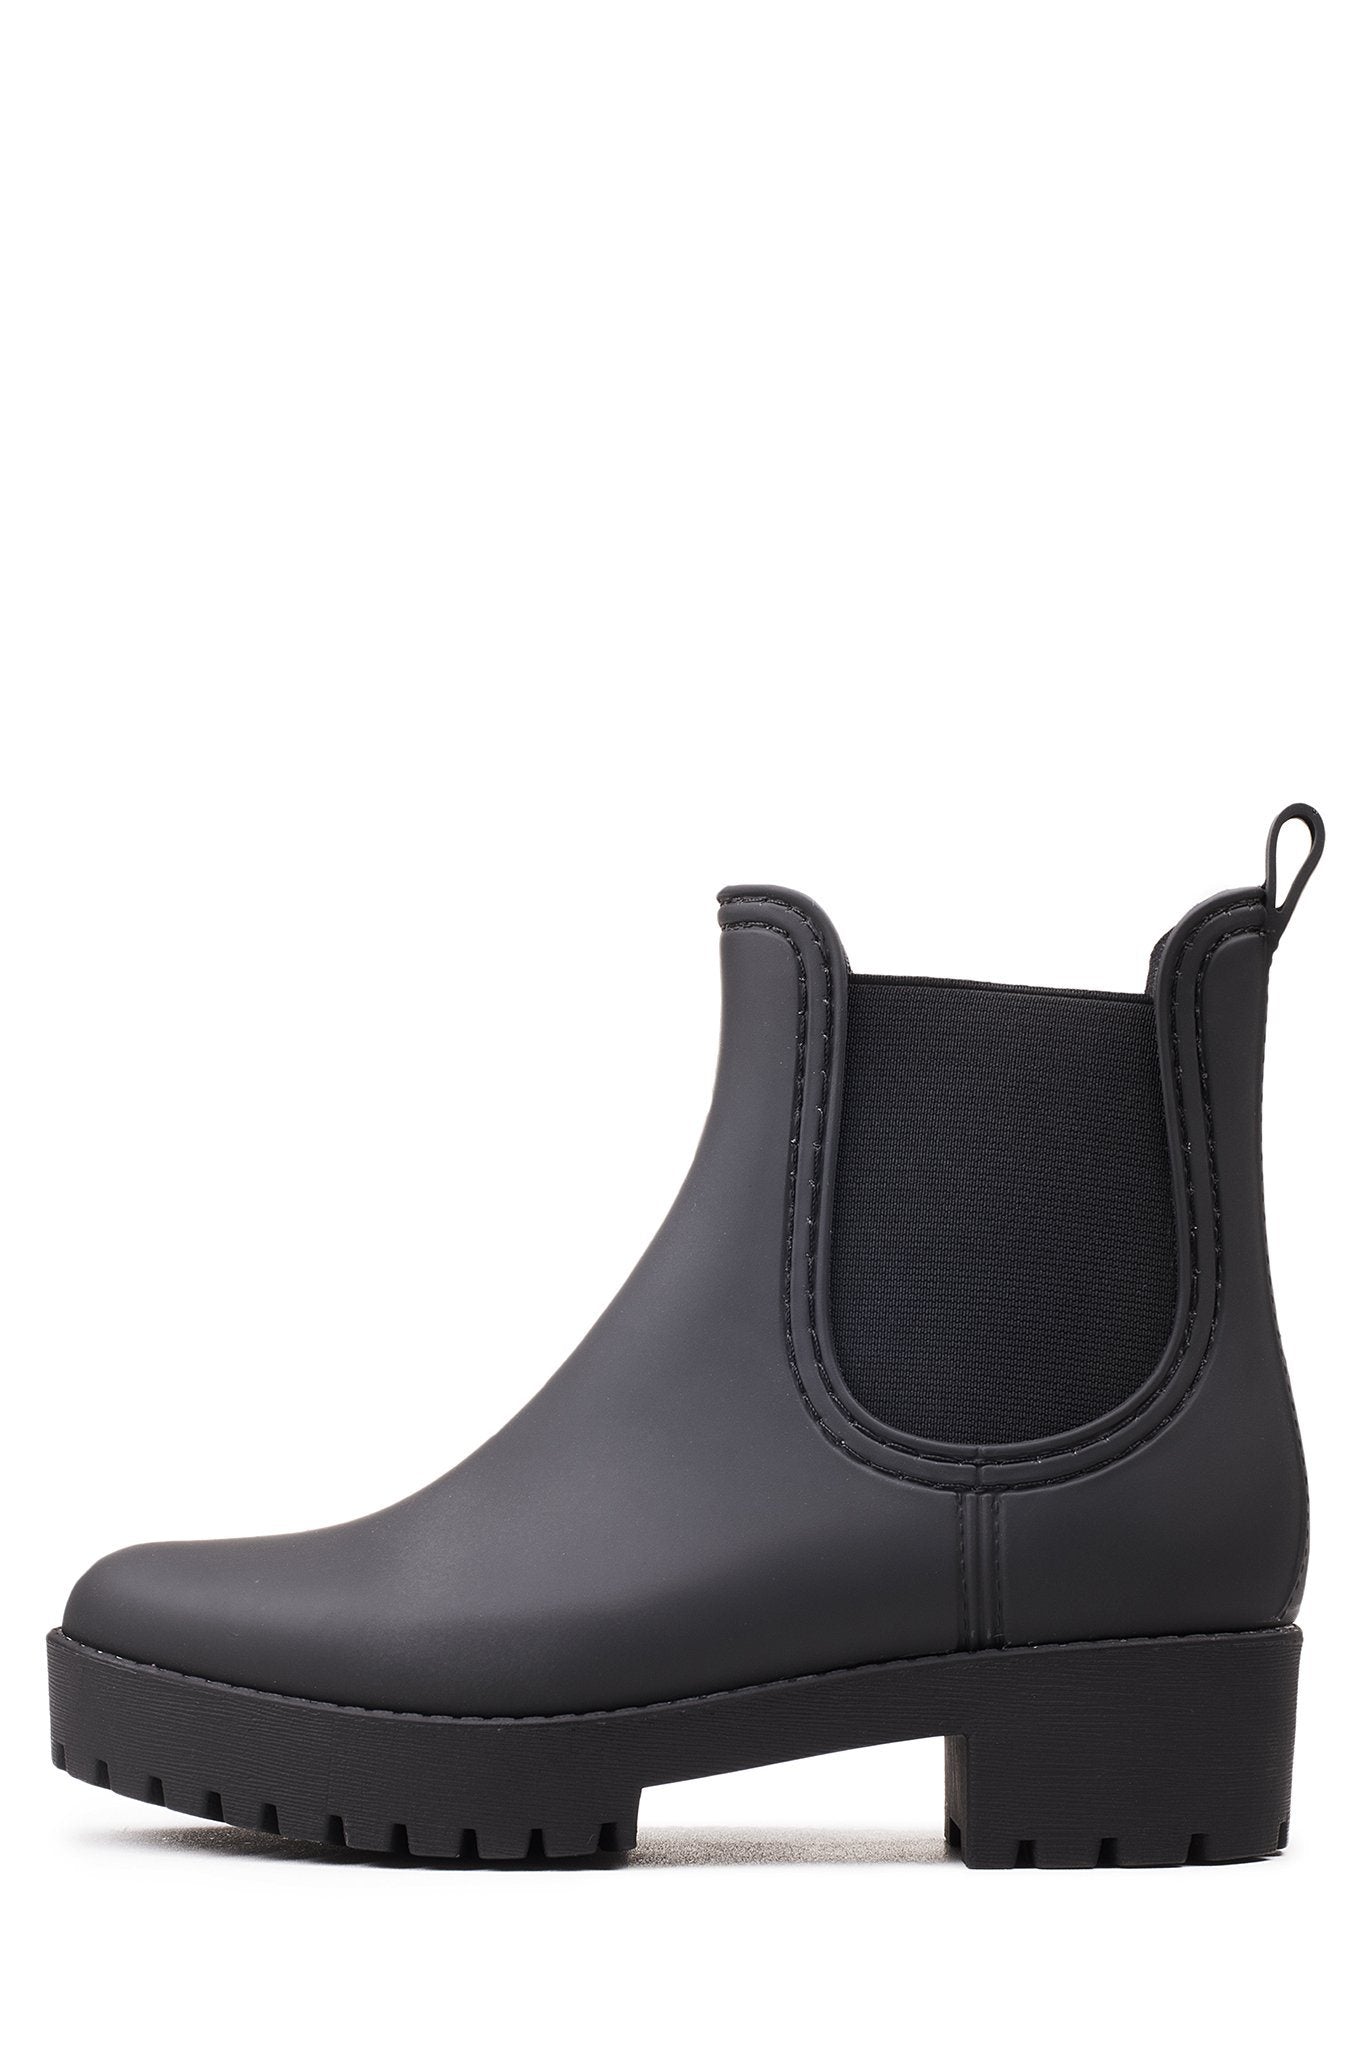 matte black rain boots